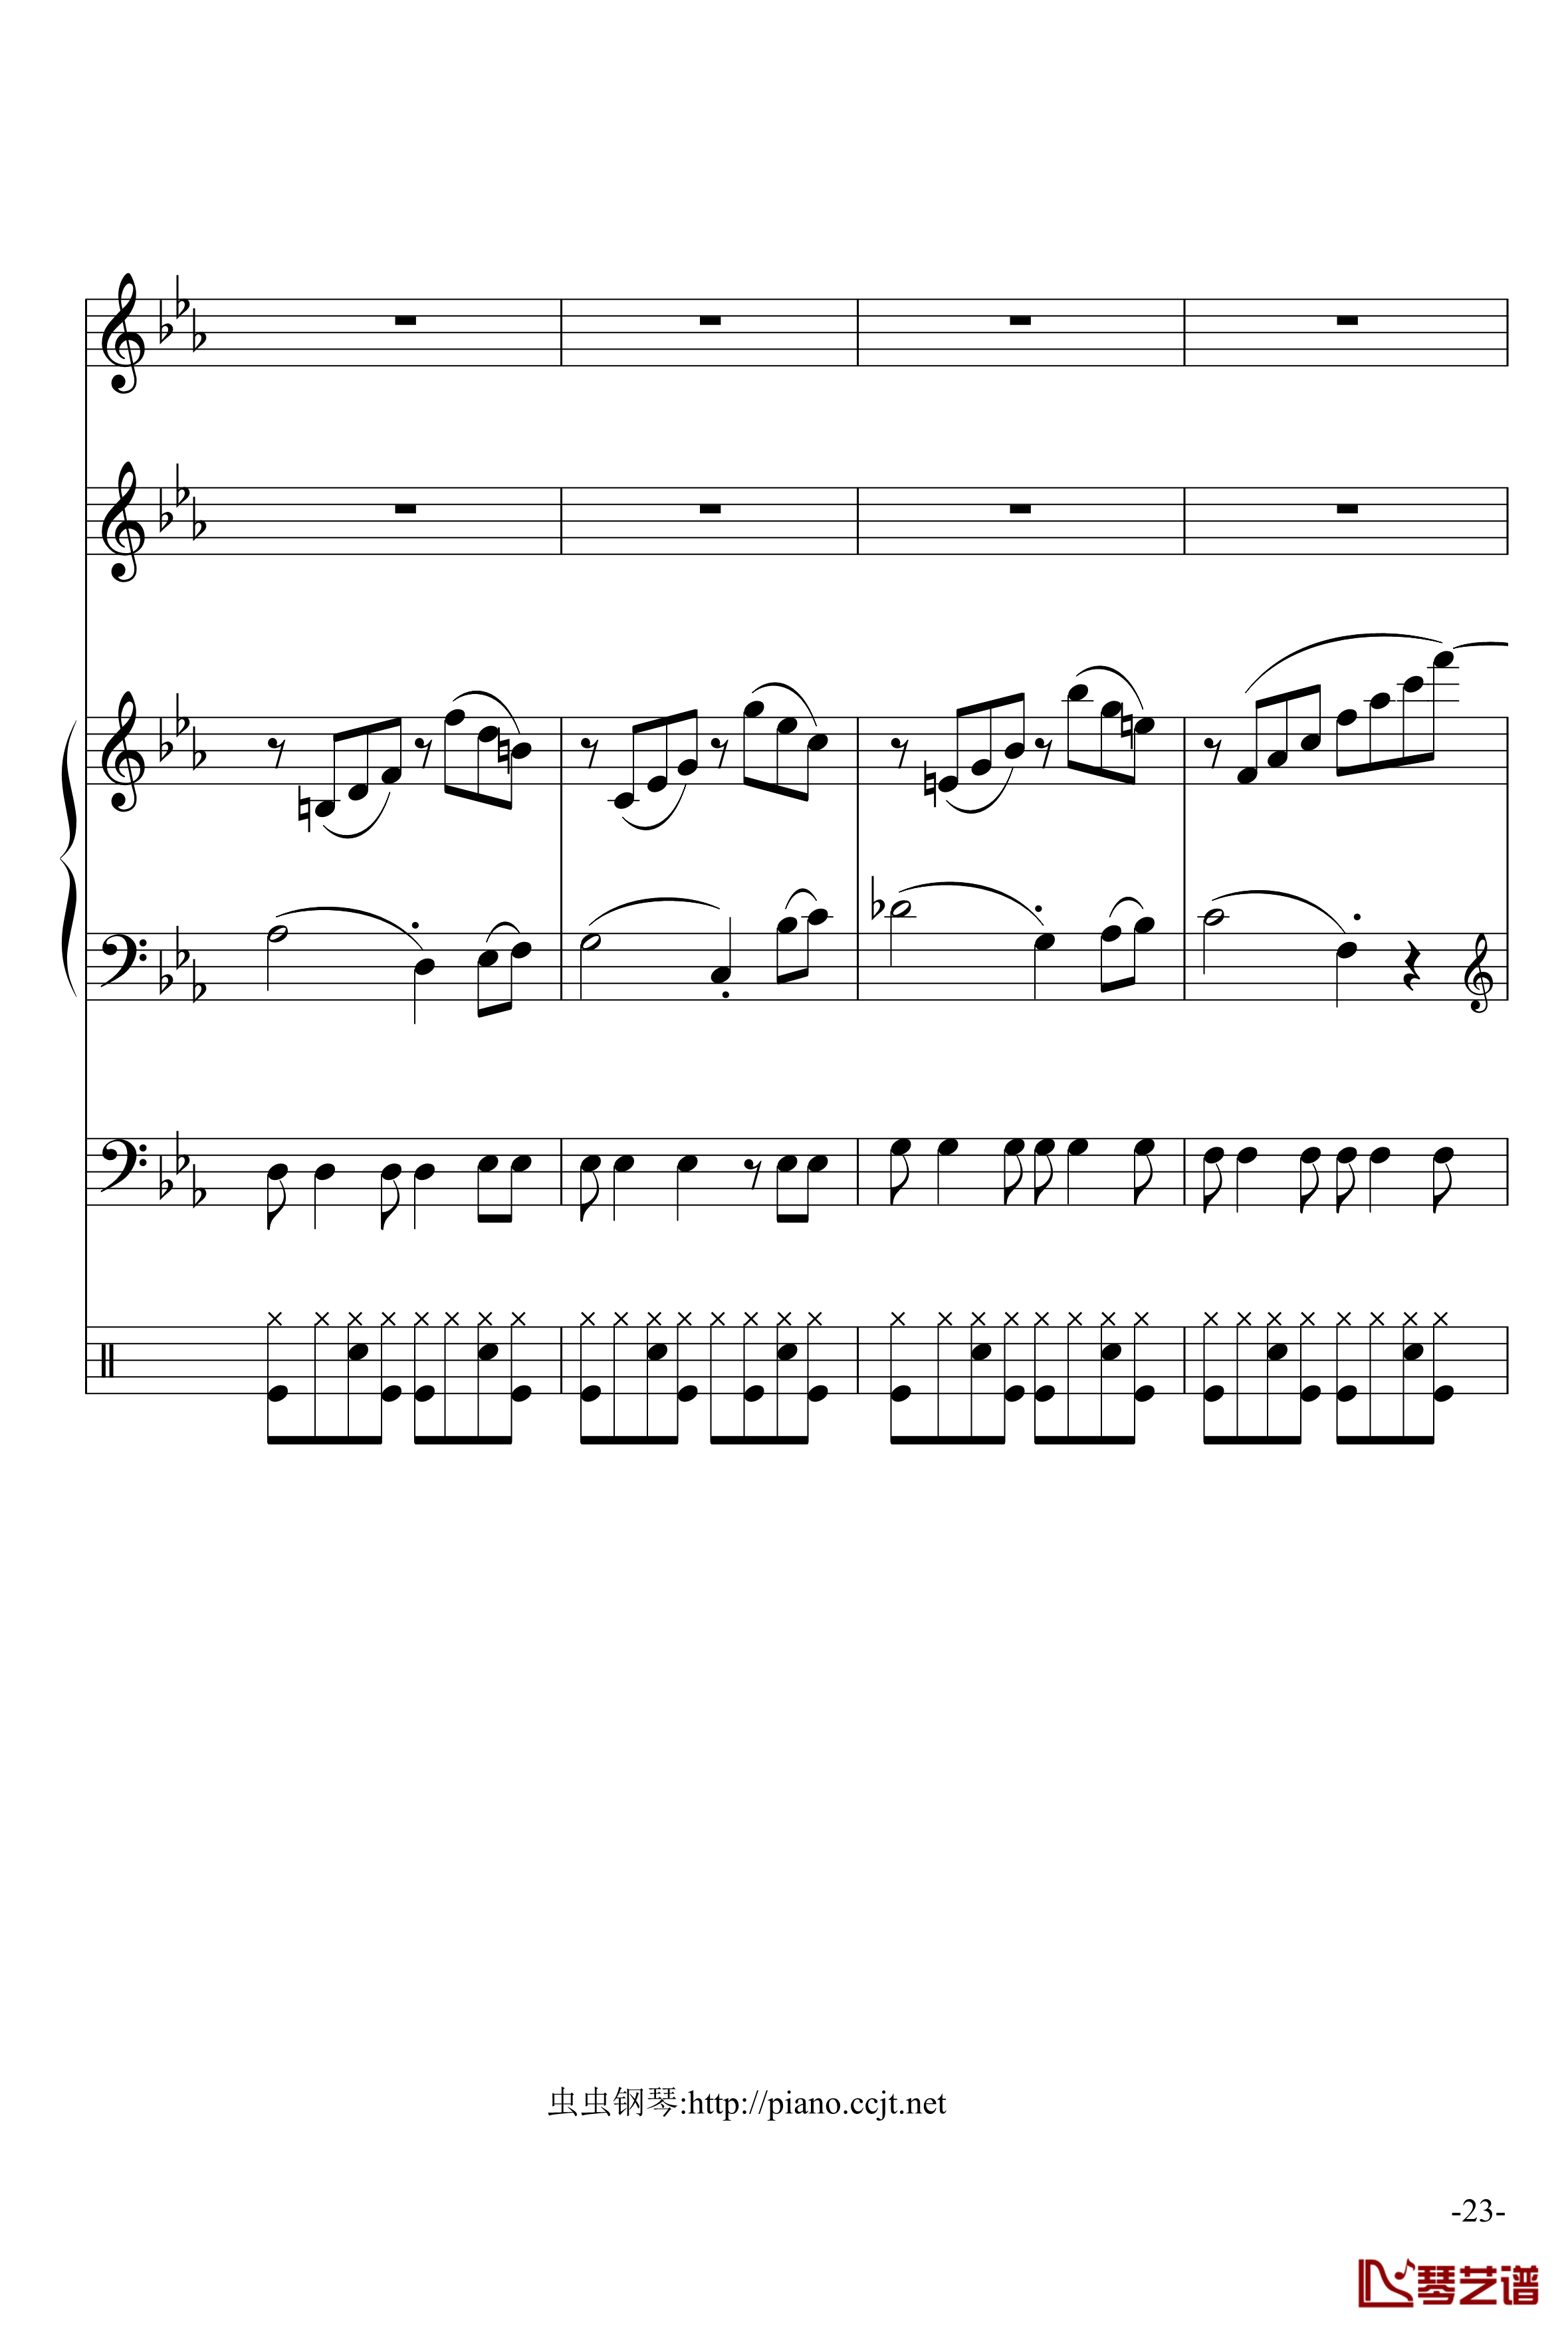 悲怆奏鸣曲钢琴谱-加小乐队-贝多芬-beethoven23